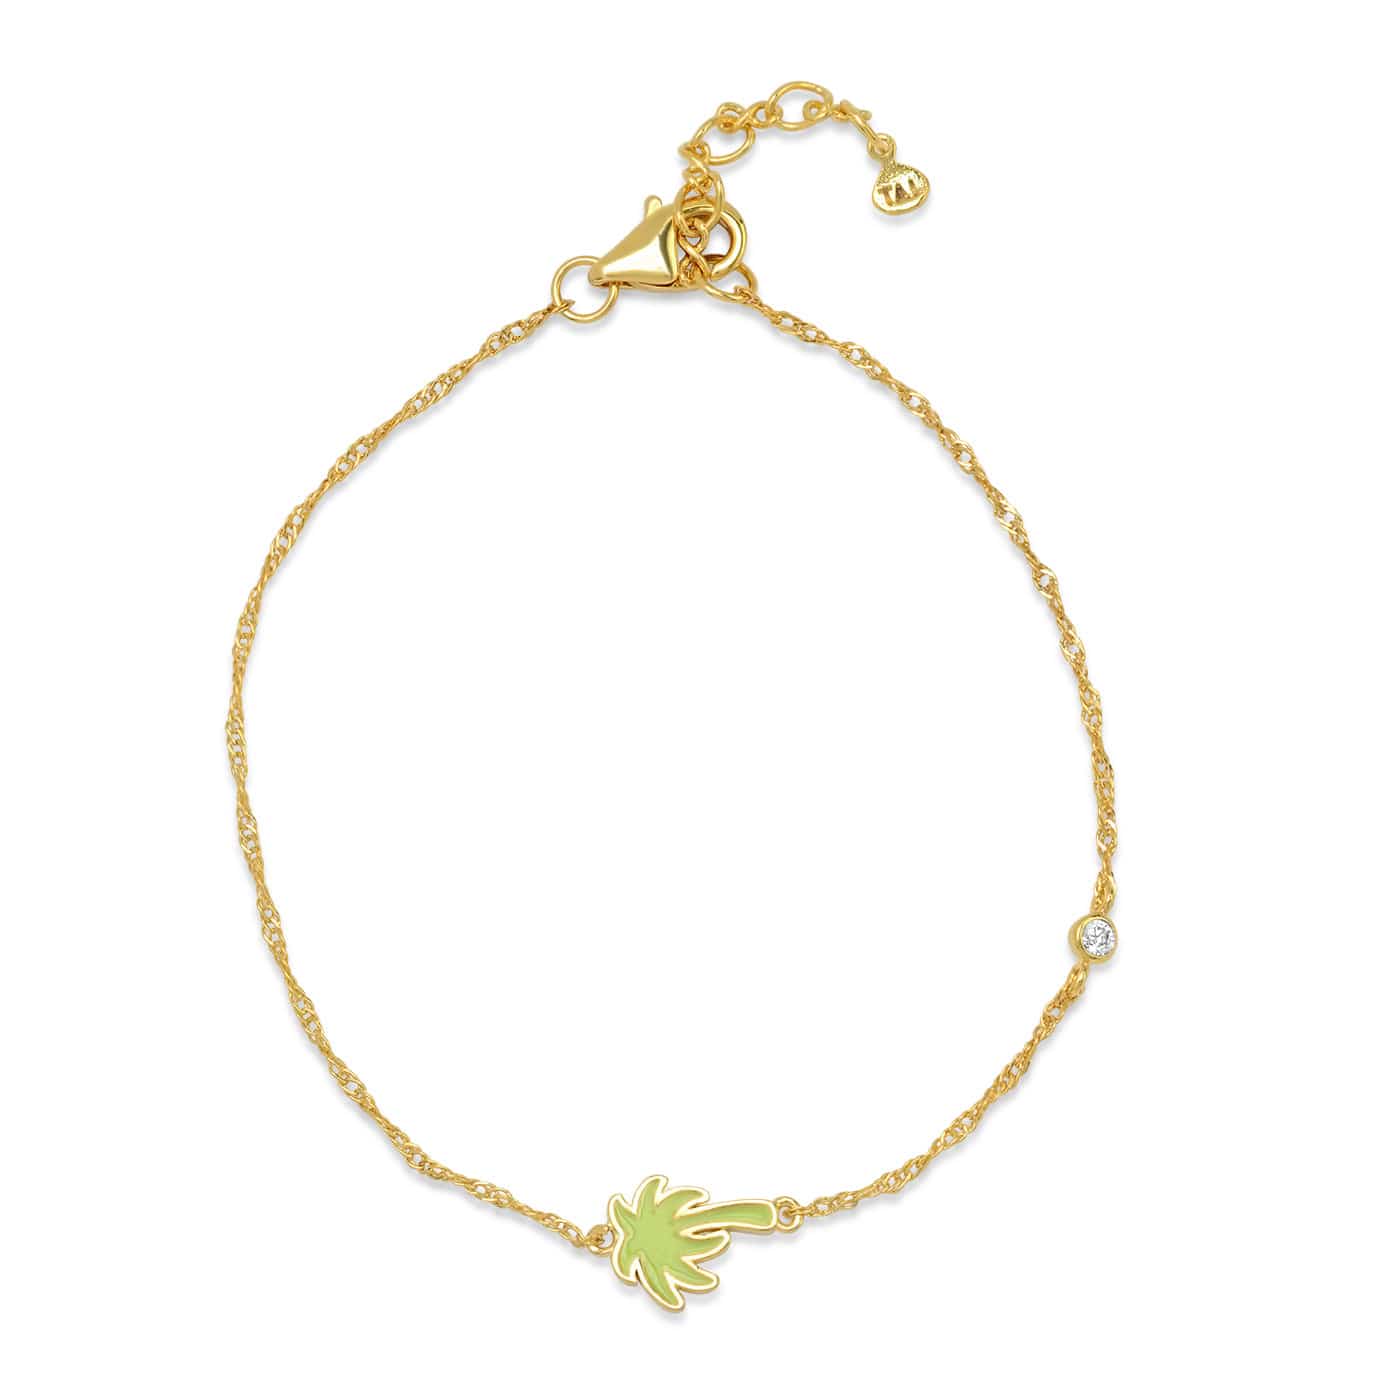 TAI JEWELRY Bracelet Palm Palm Enamel Charm Chain Bracelet